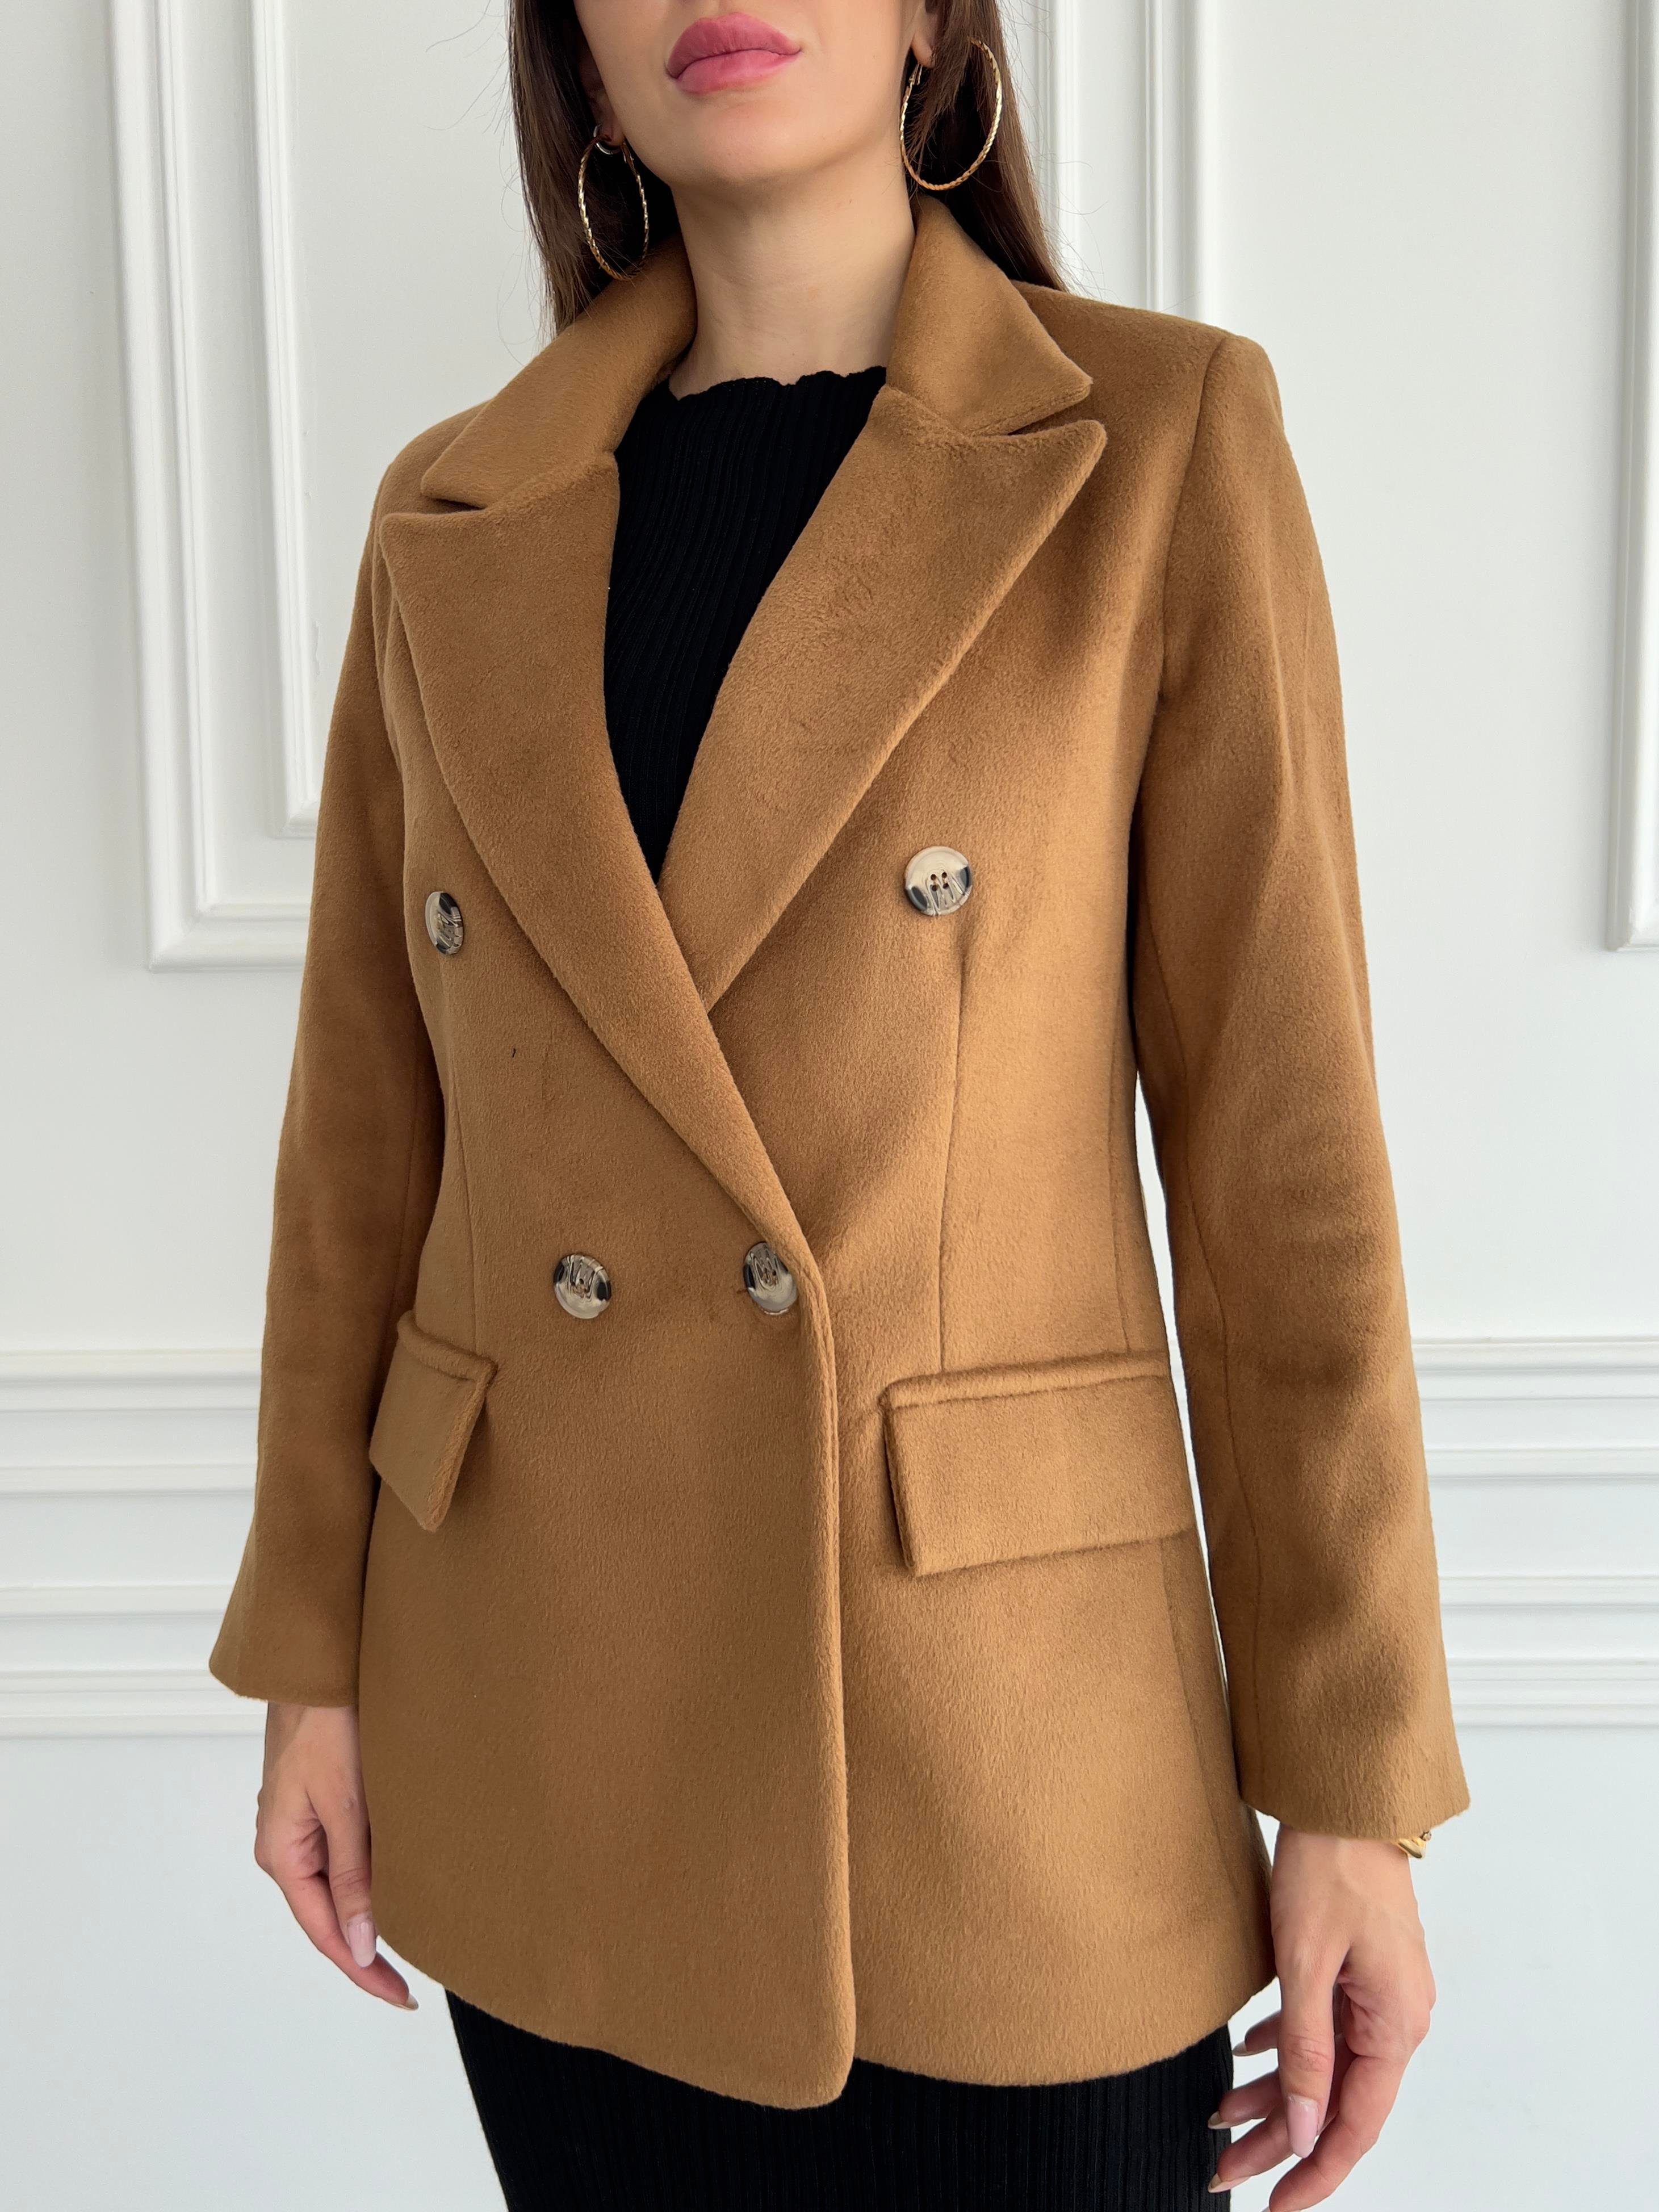 Kadın Yumuşak Kruvaze Yaka Kaşe Kumaş Kahverengi Blazer Ceket